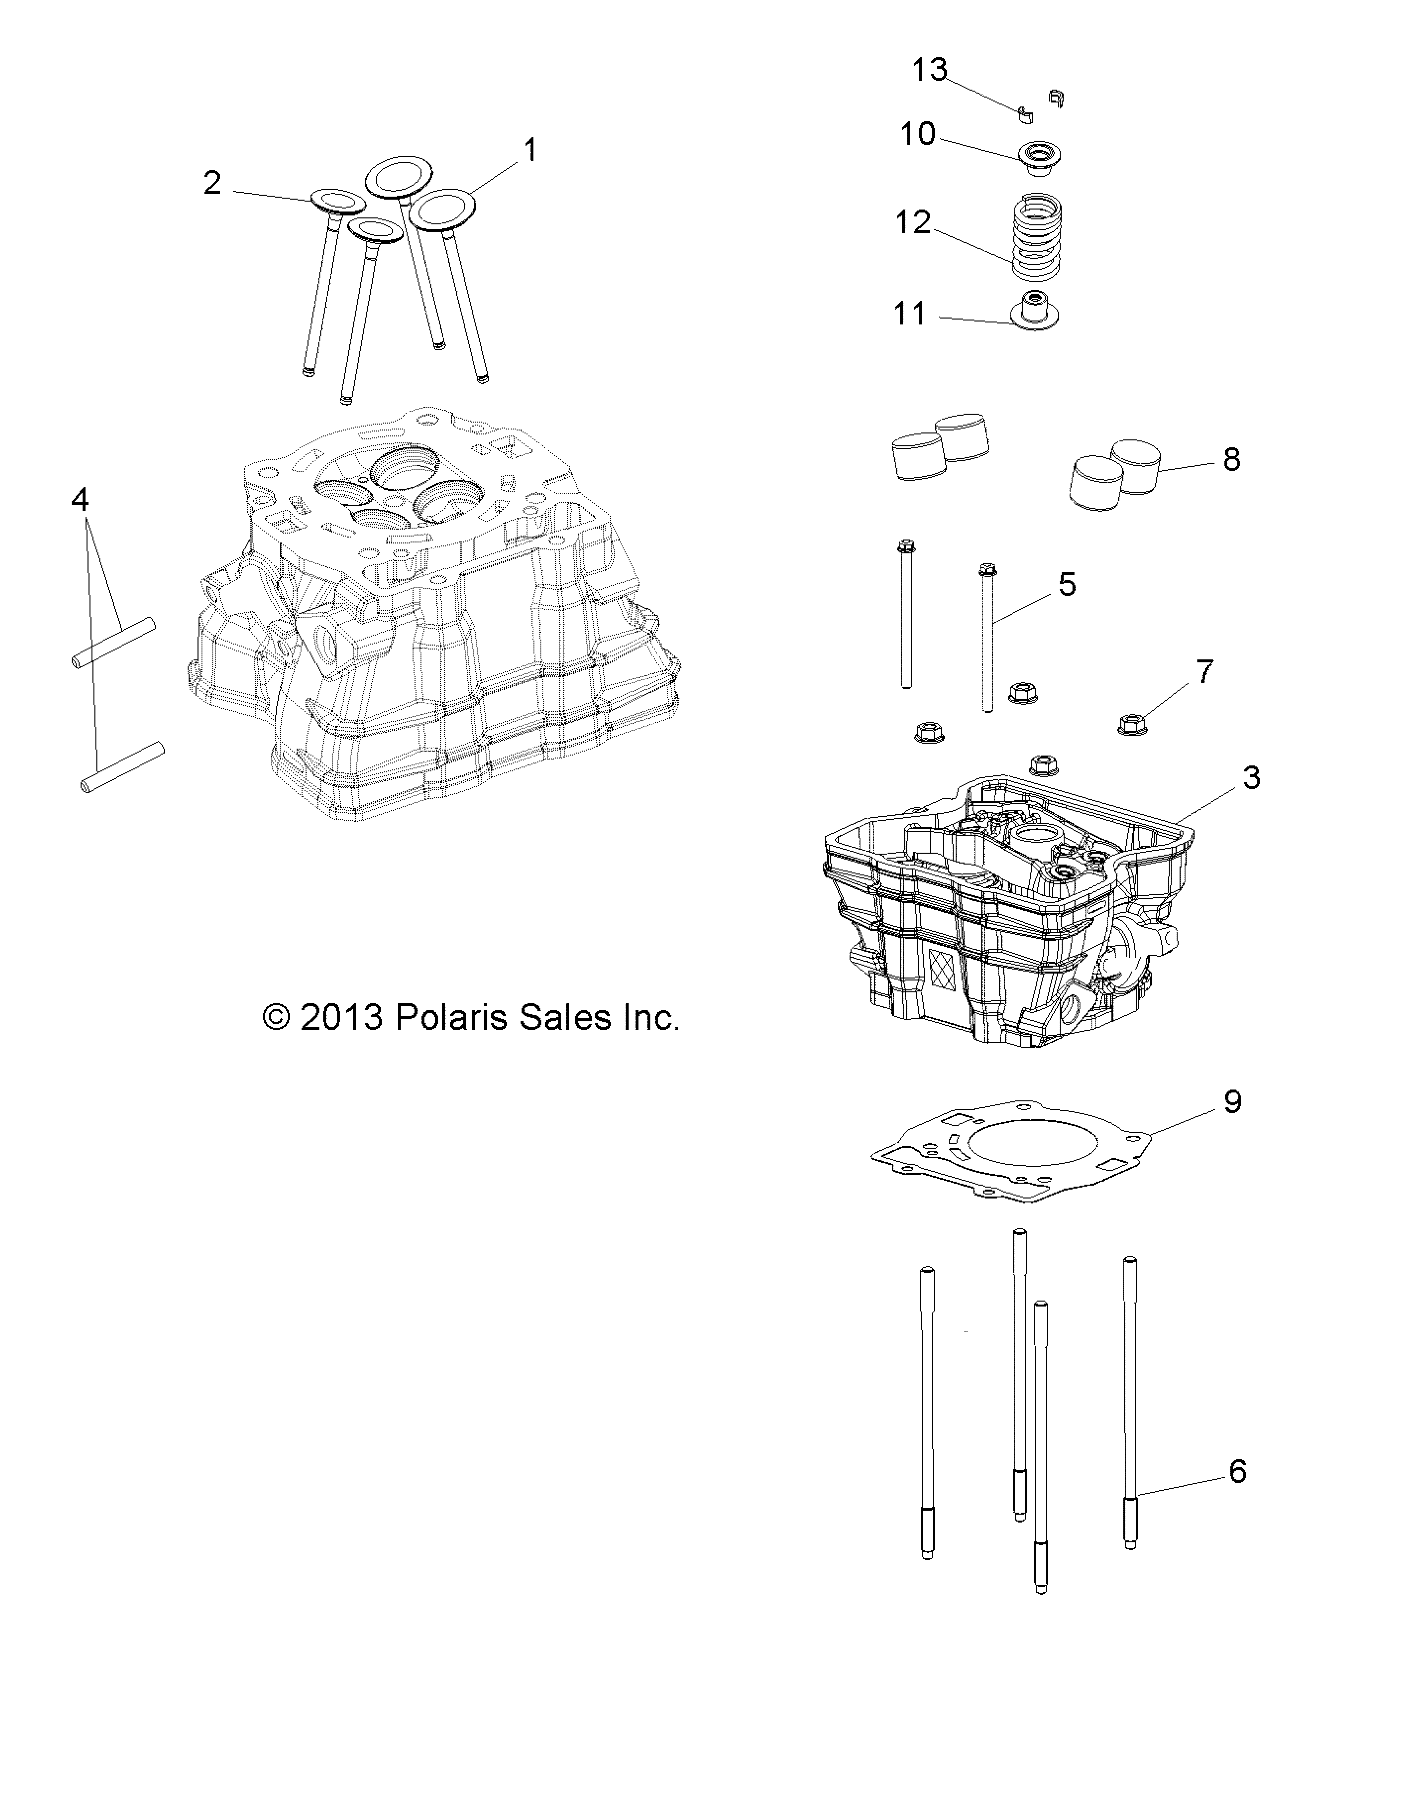 ENGINE, CYLINDER HEAD - A14BH33AJ (49ATVCYLINDERHD14SP325)